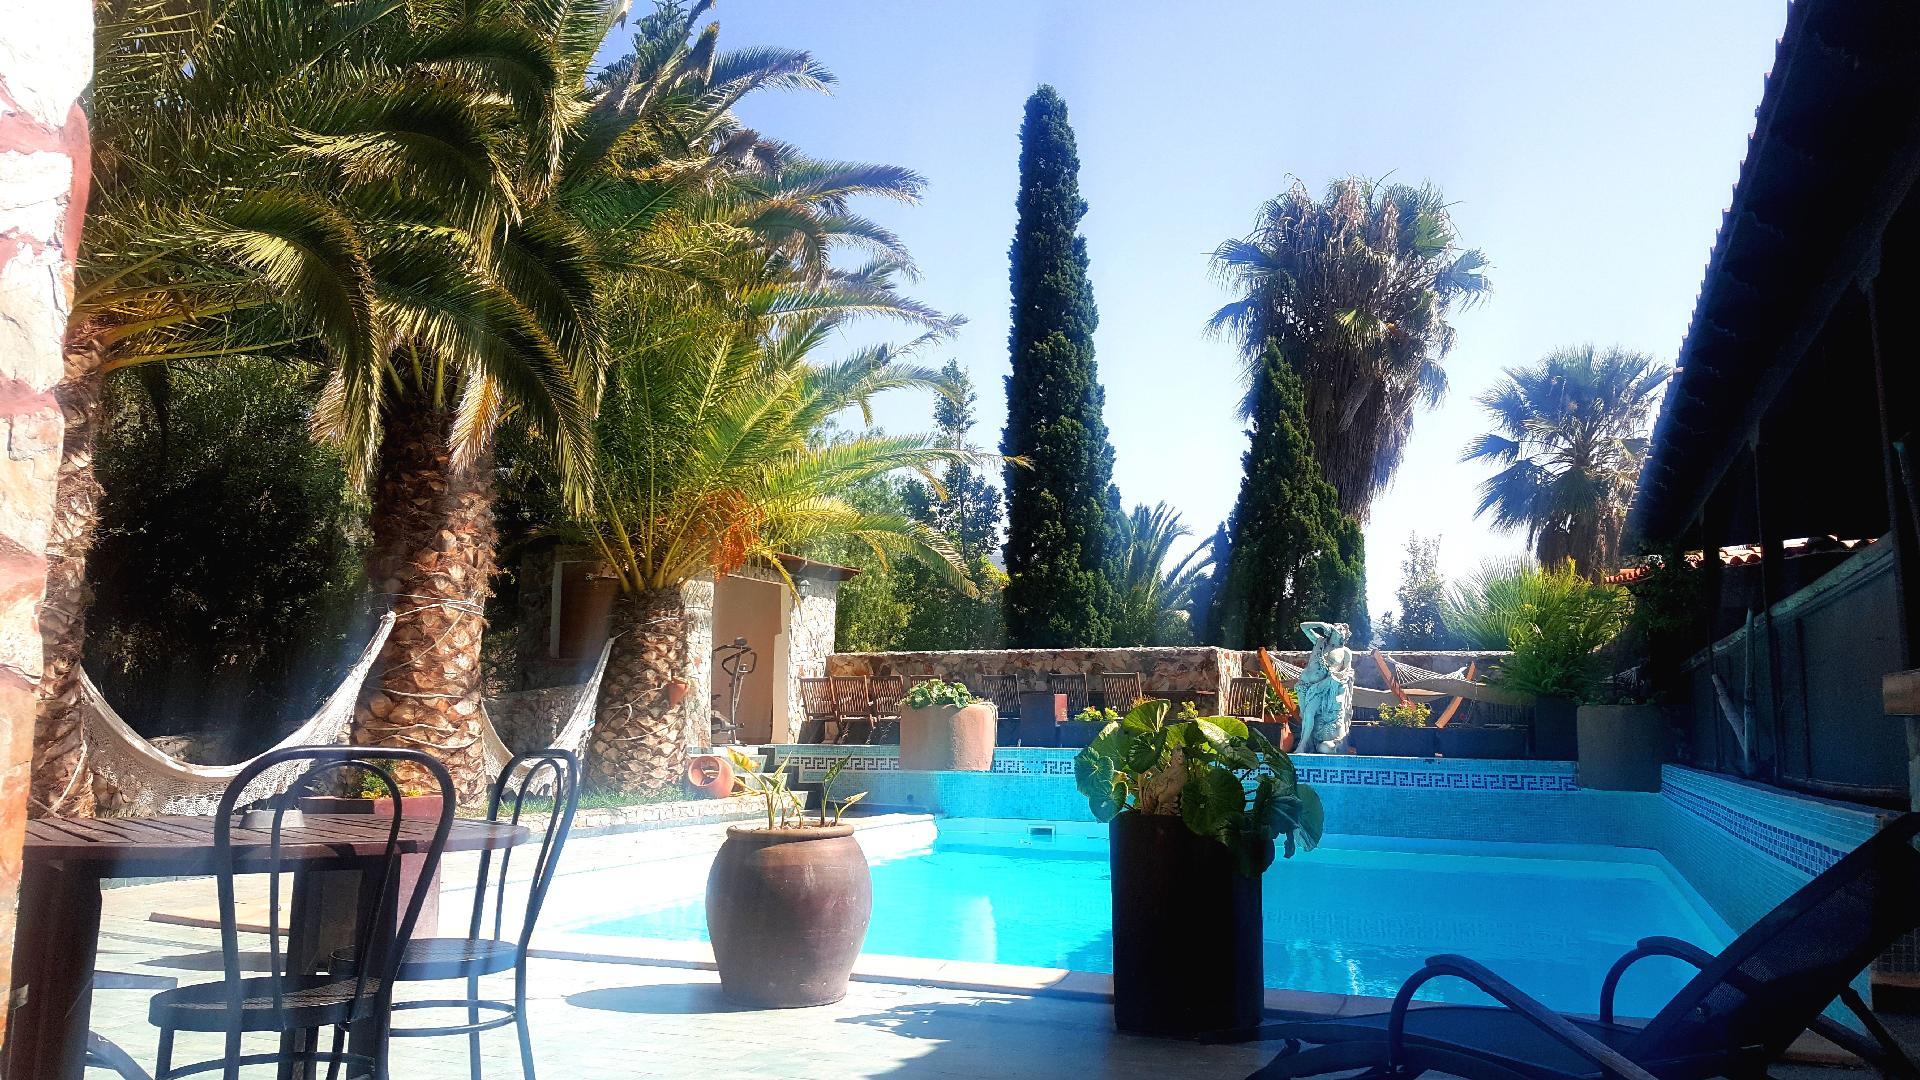 Wohnung mit Balkon, Pool und Grill auf Teneriffa. Ferienwohnung in Spanien